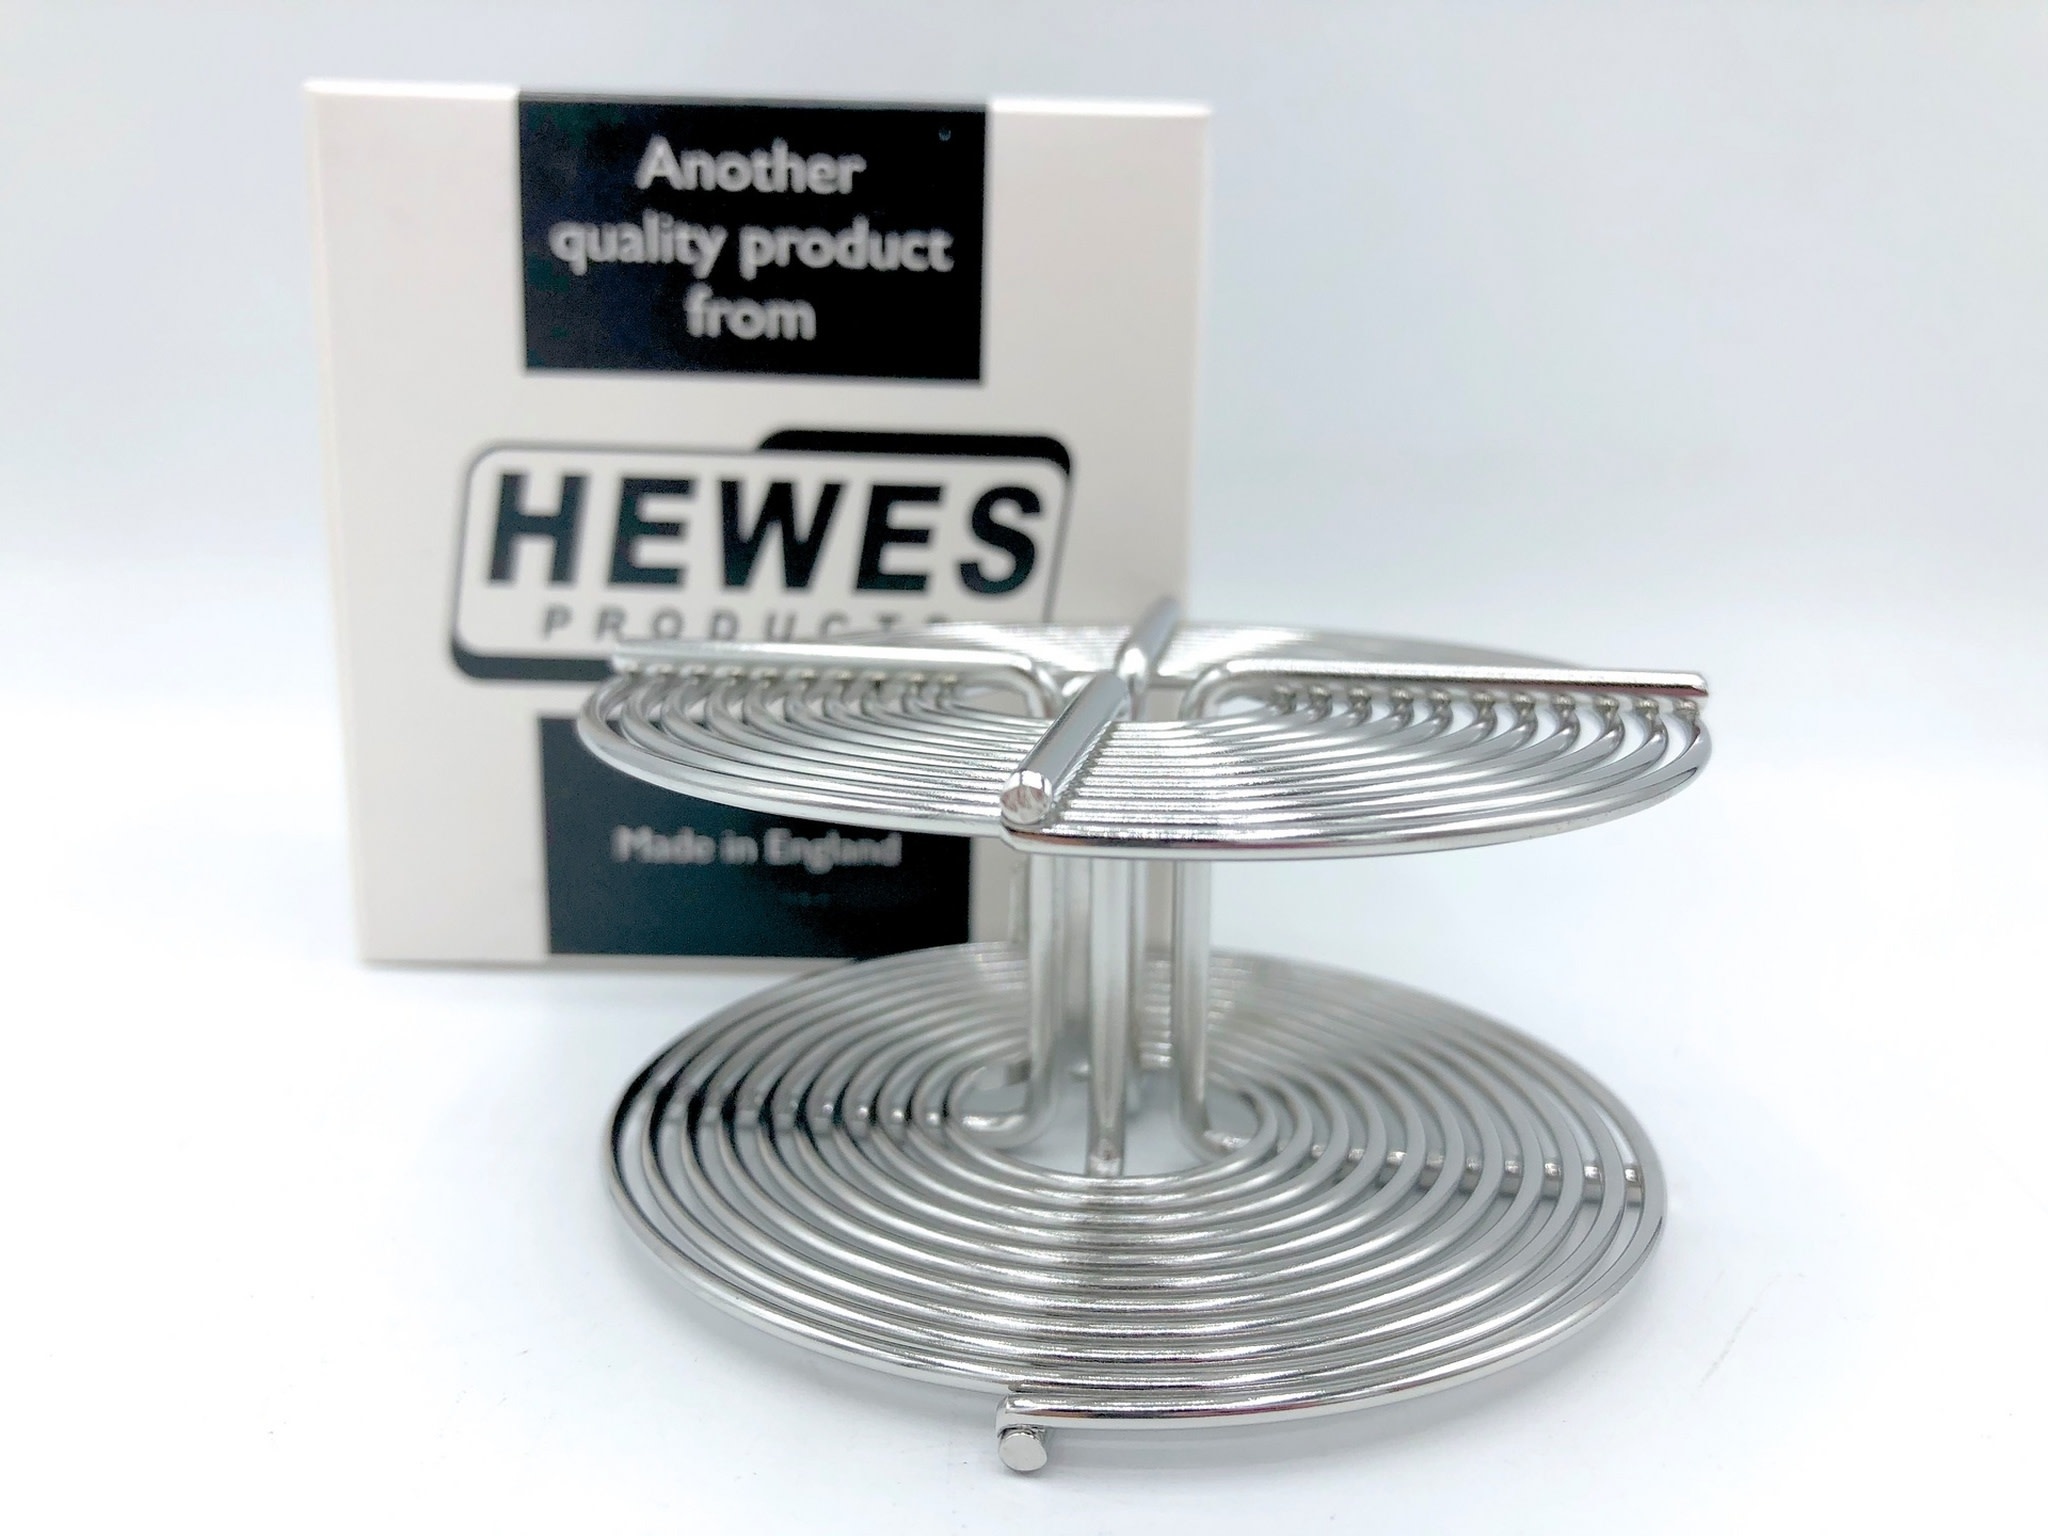 Hewes Hewes Pro SS 35mm Reel